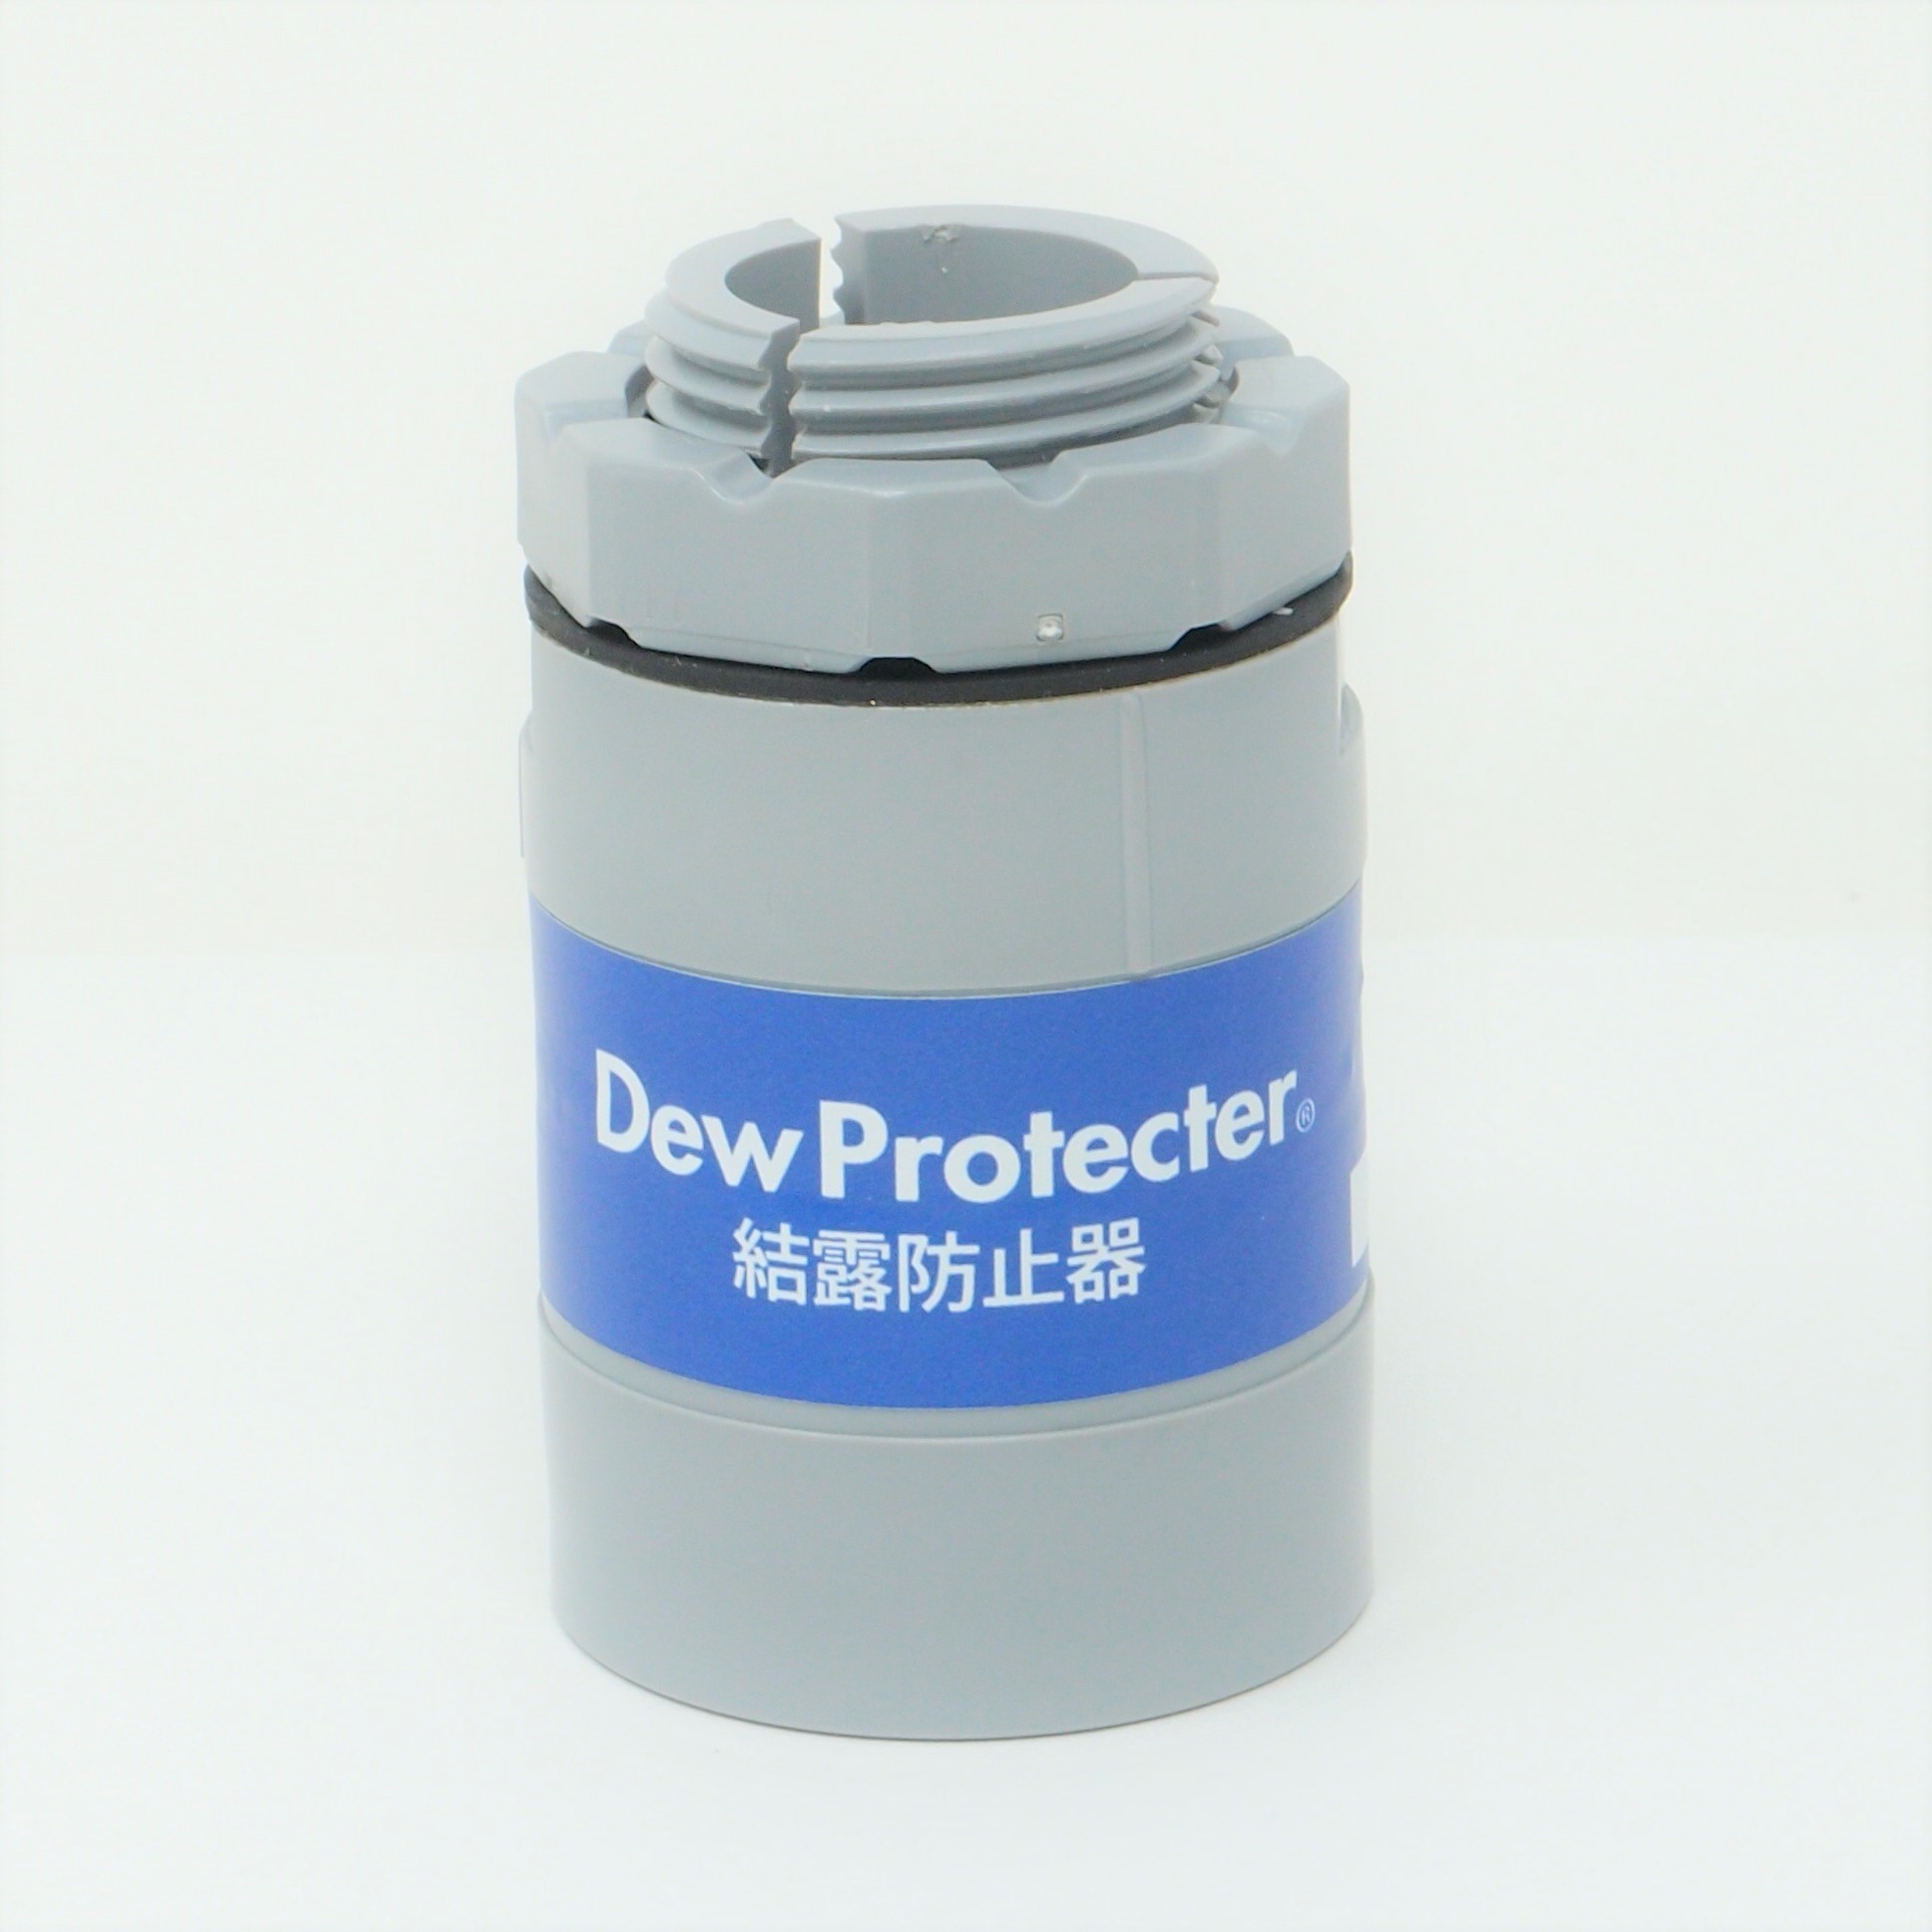 結露防止器 Dew Protecterのイメージ画像